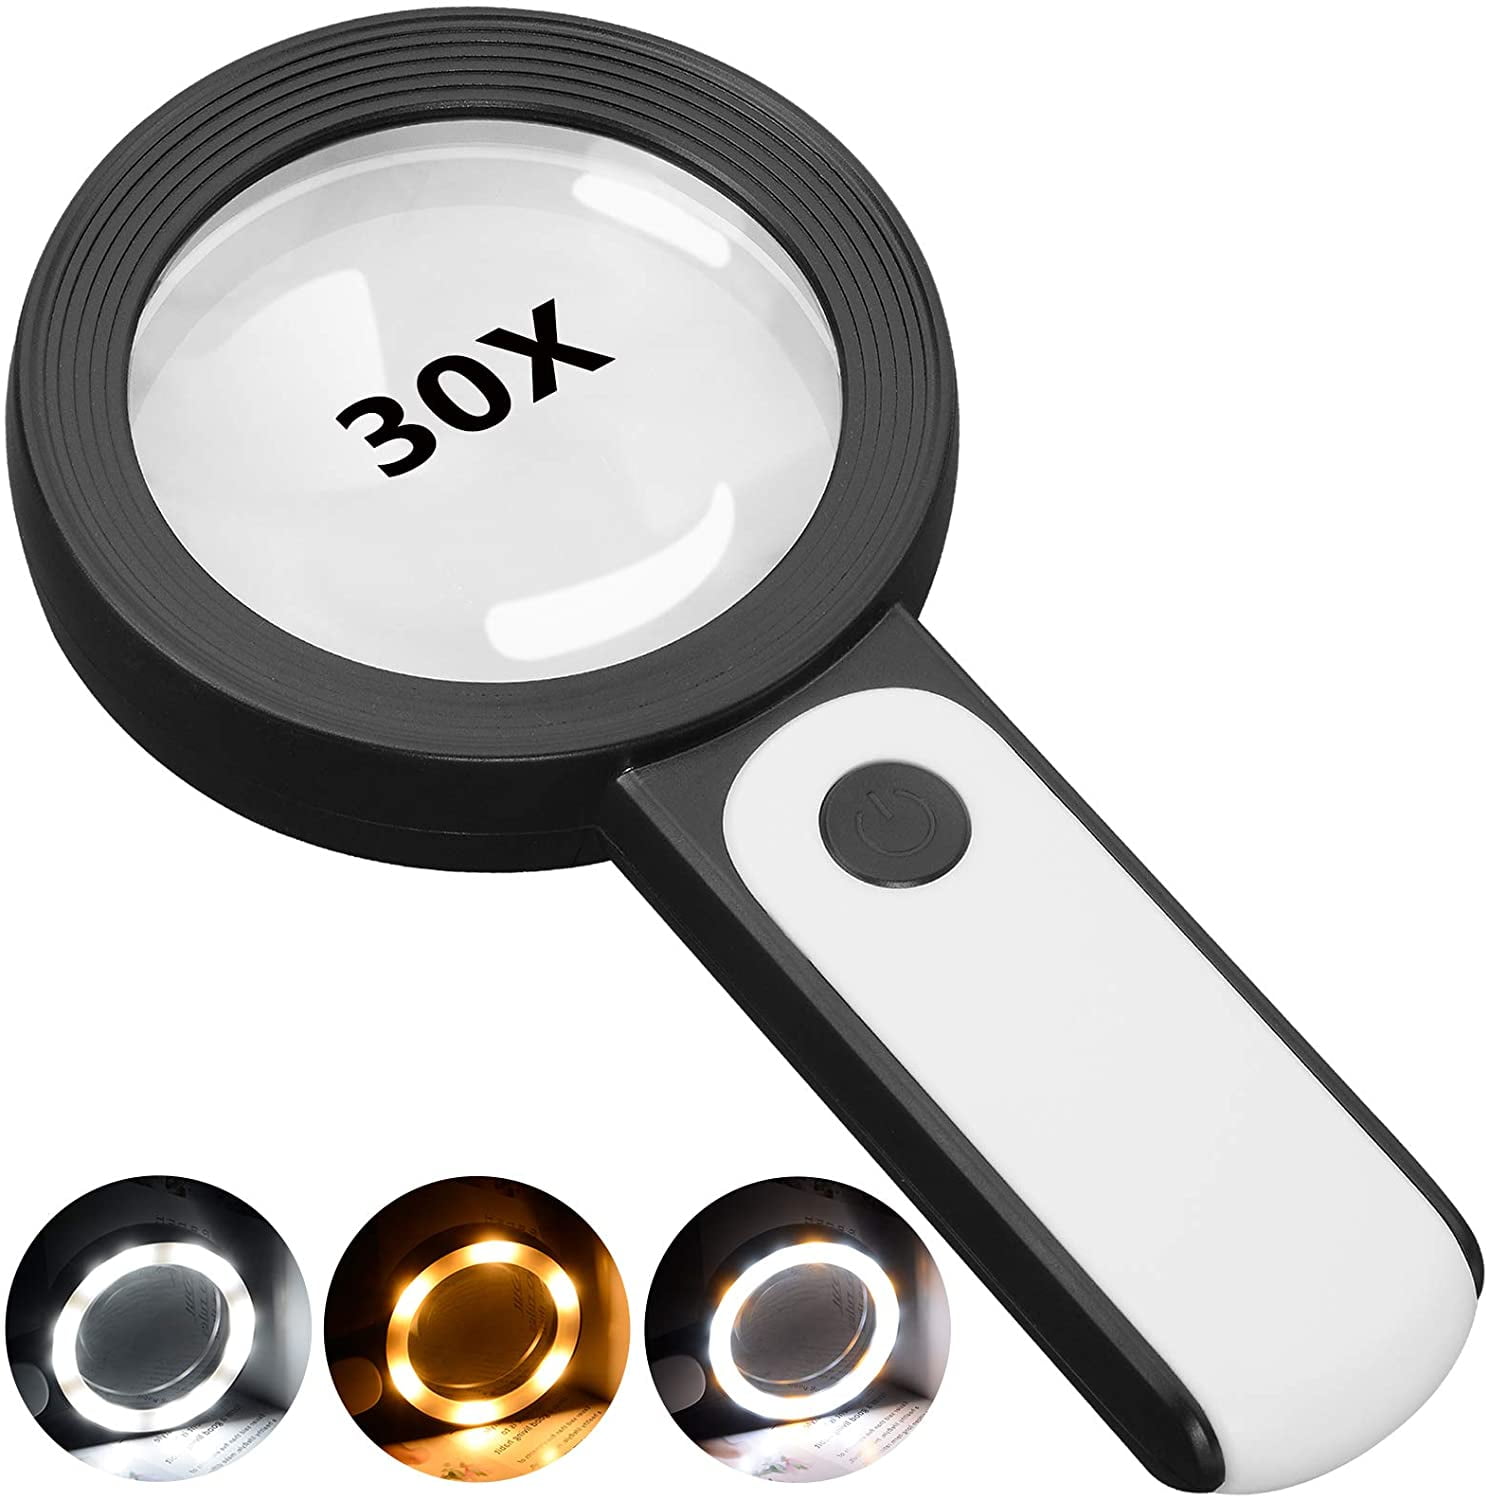 3 Led Light 30x 45x Magnifying Glass Lens Mini Pocket - Temu